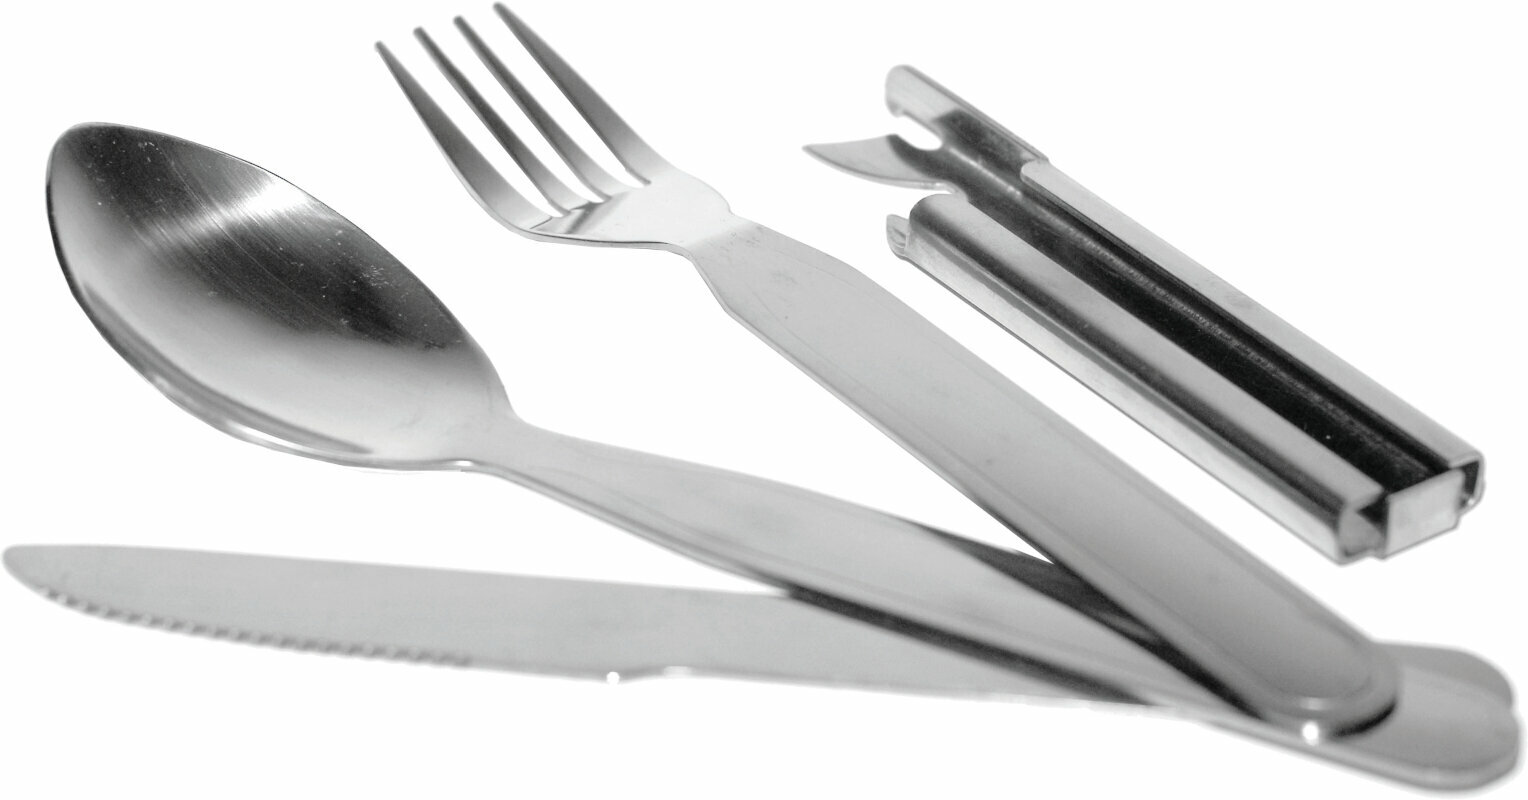 Příbor Rockland Premium Tools Cutlery Set Příbor